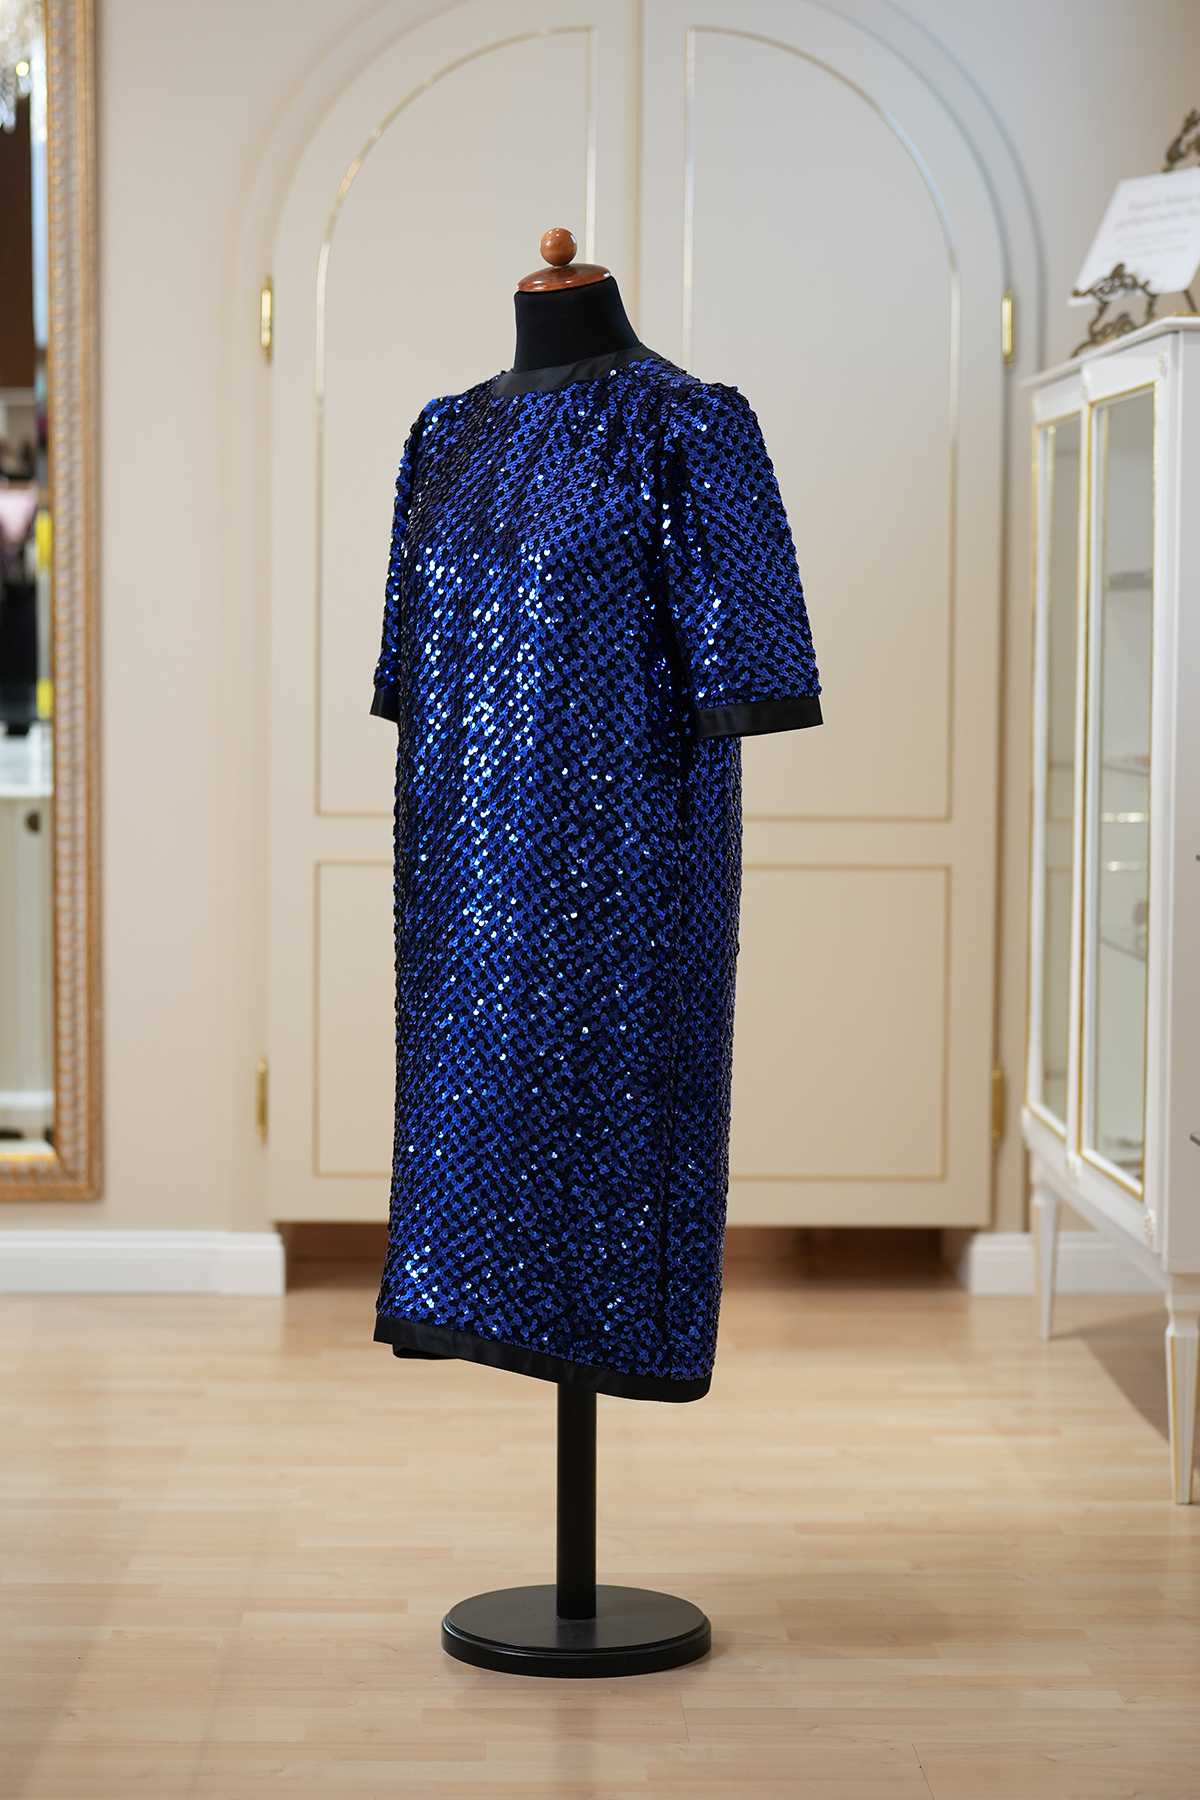 Yvette Creation a la Mode de Paris - Abendkleid -  schwarzblau glizernd– Gr. 40 – sehr guter Zustand